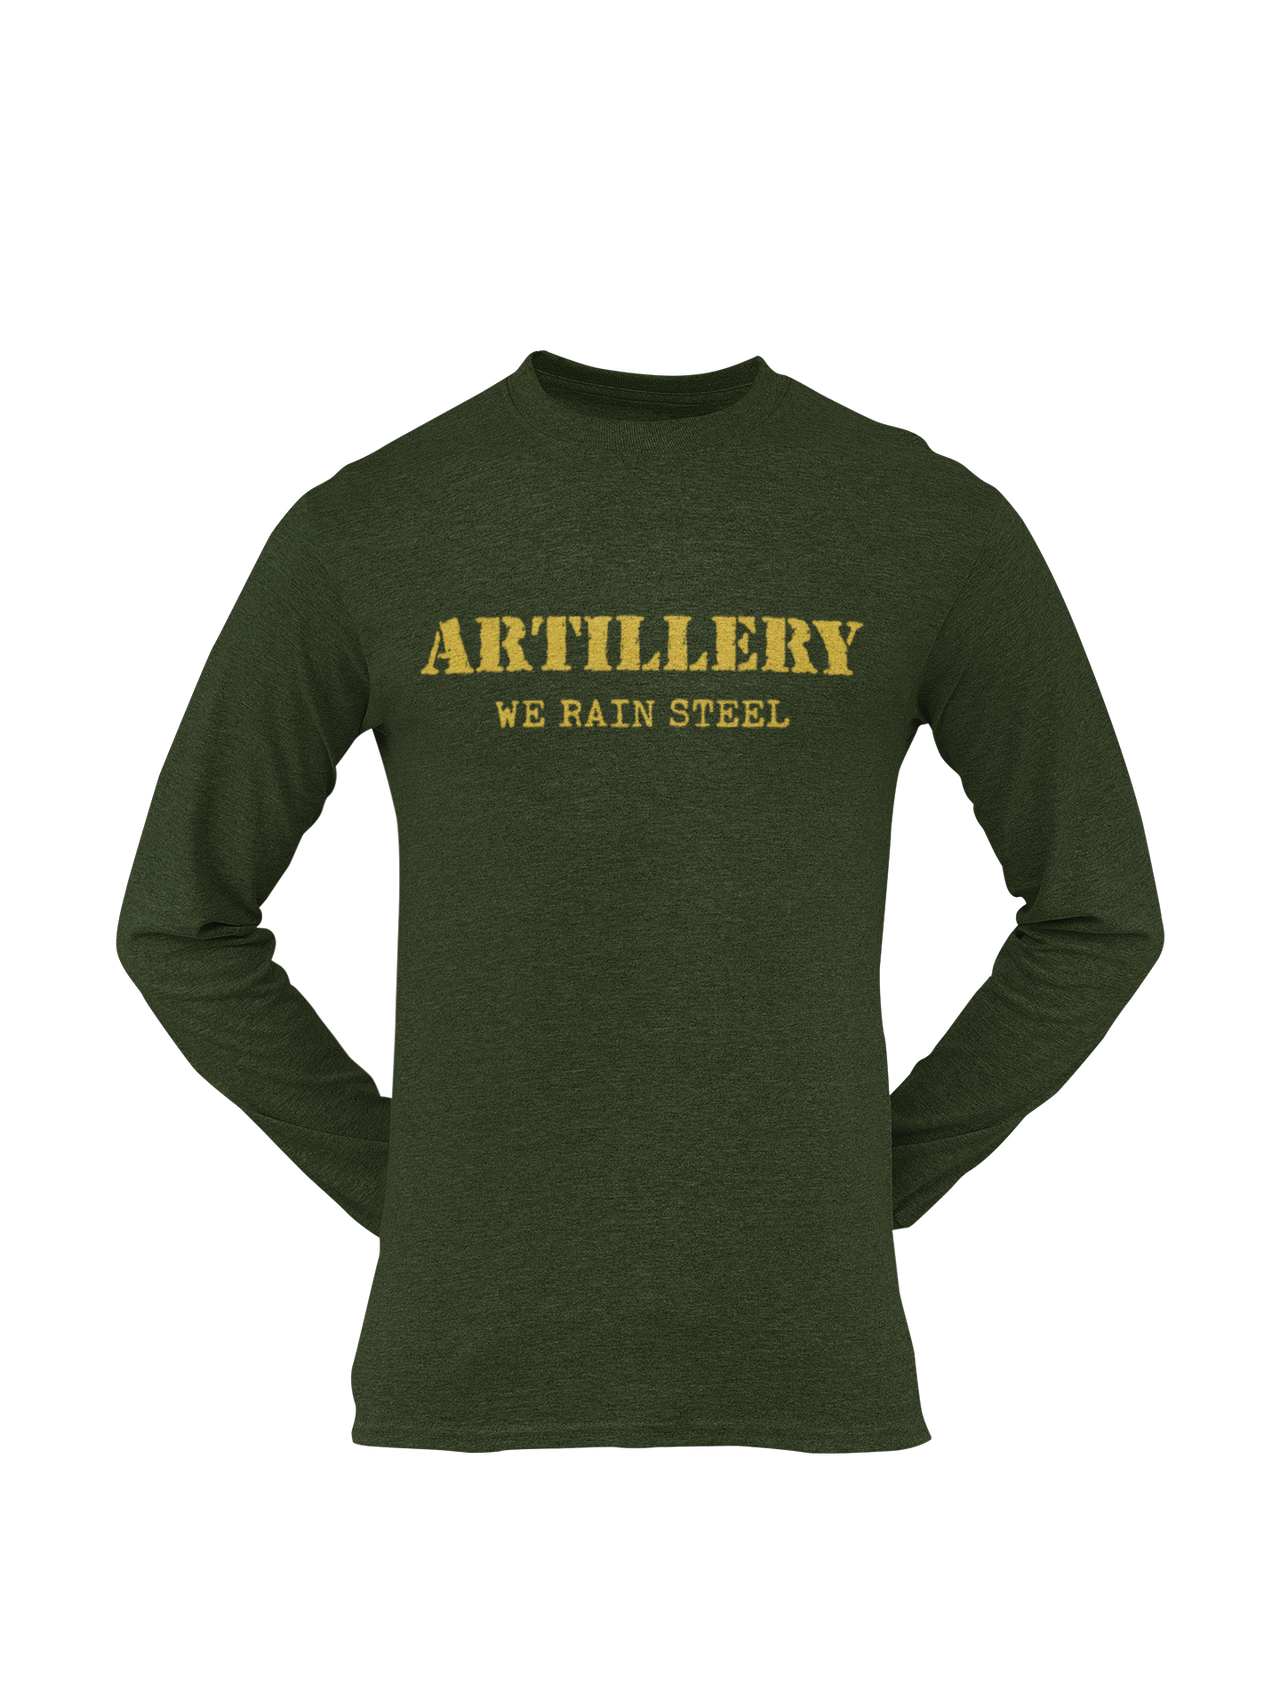 Artillery T-shirt - We Rain Steel (Men)